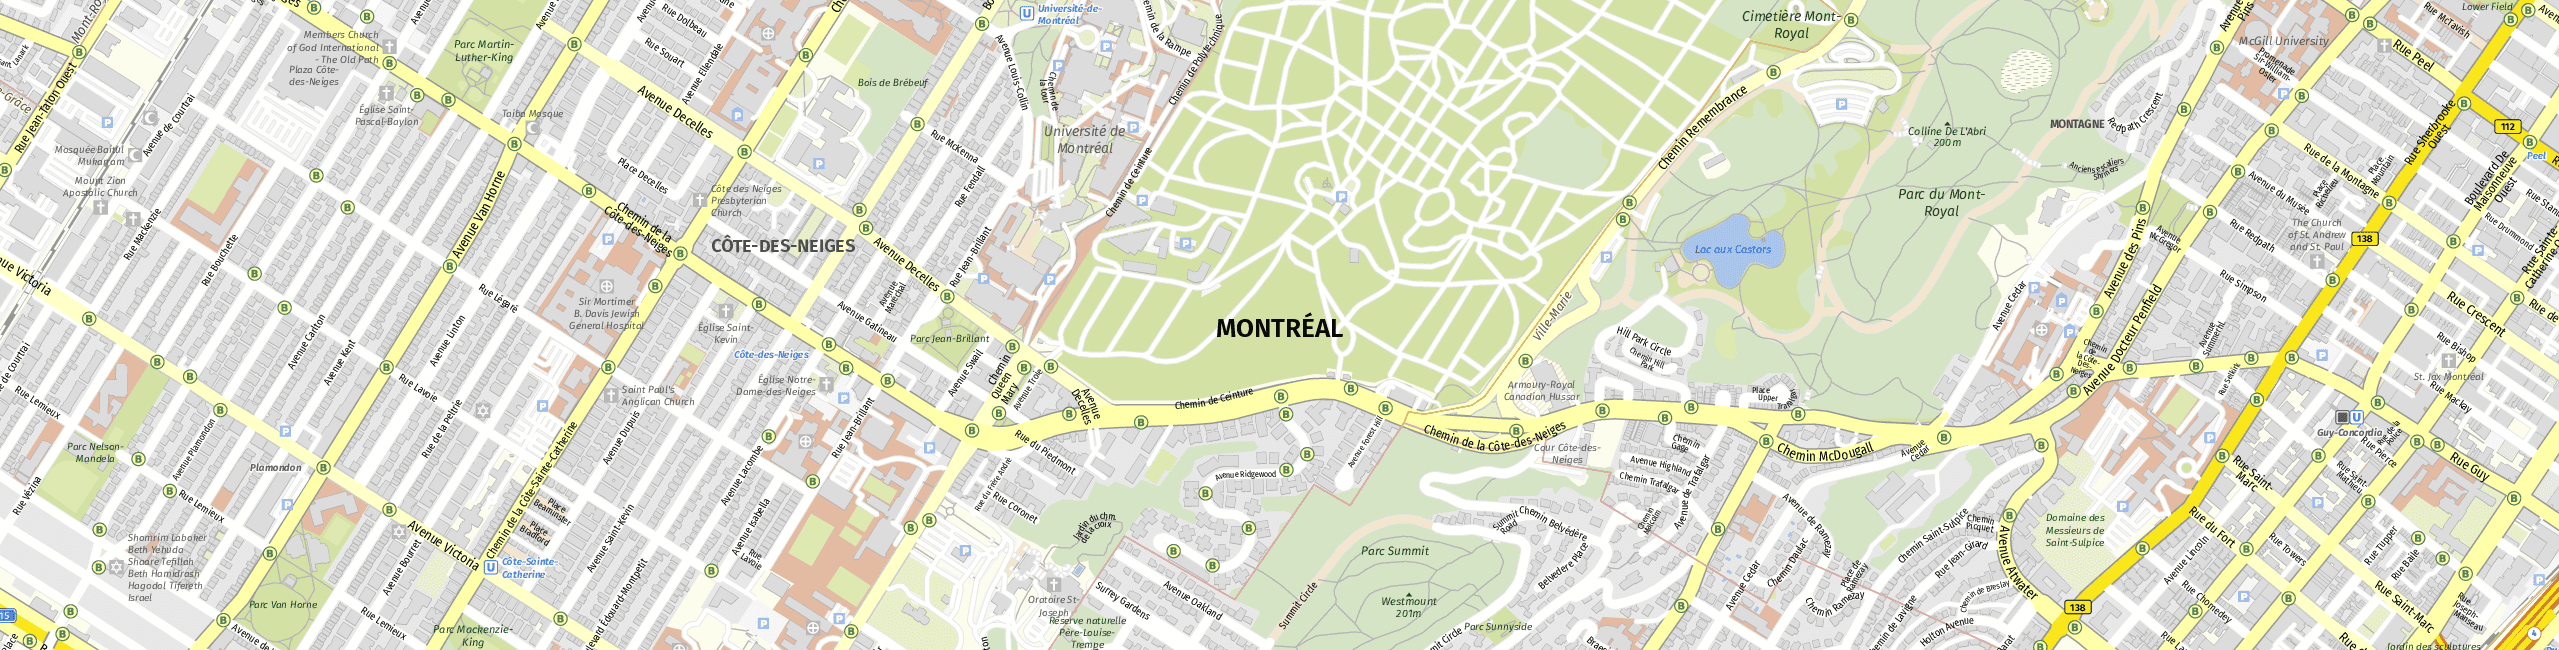 Stadtplan Montreal zum Downloaden.